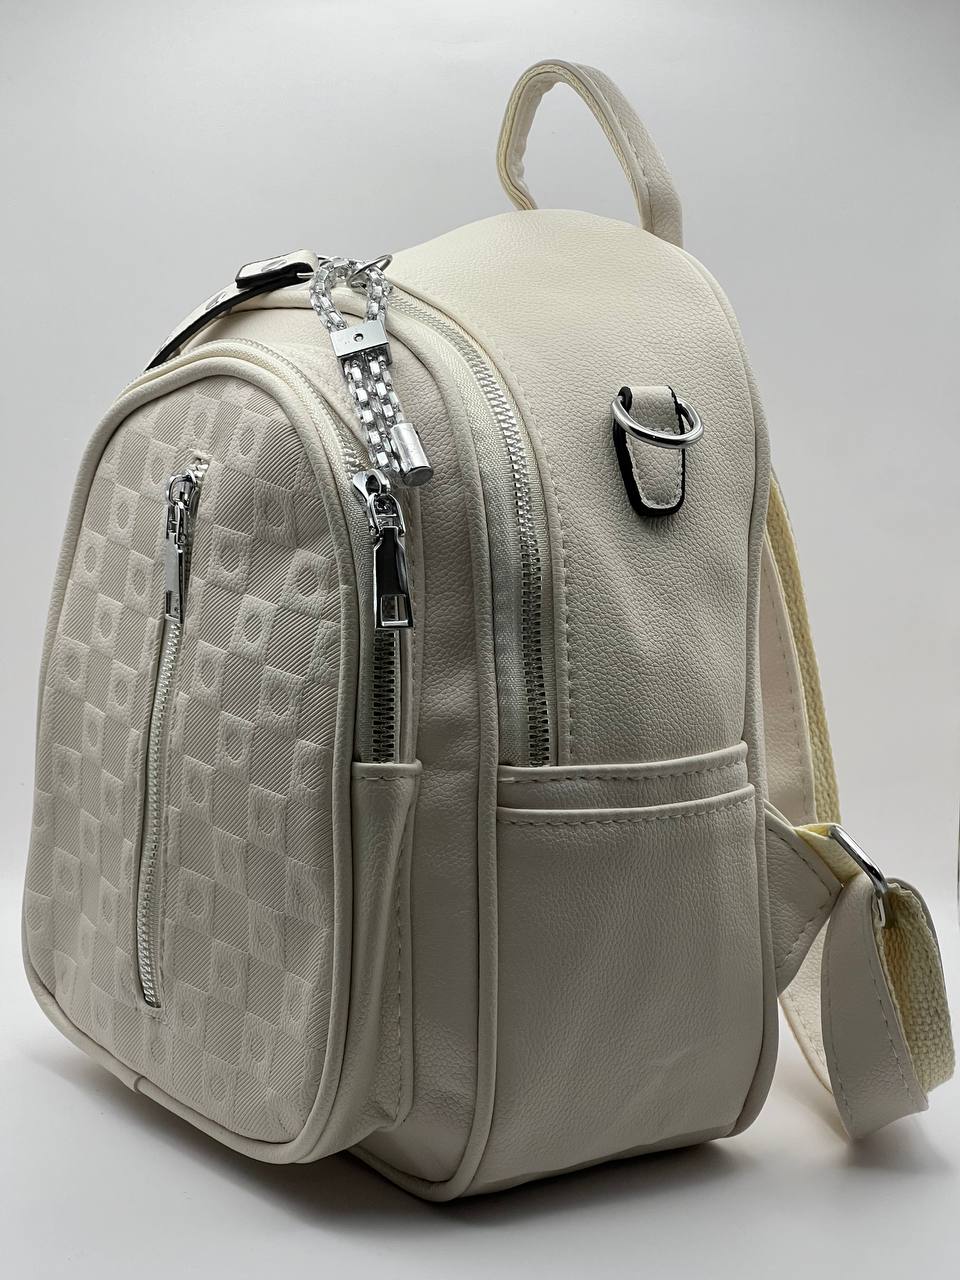 Сумка-рюкзак женская SunGold Р-92010 молочная, 27х22х12 см